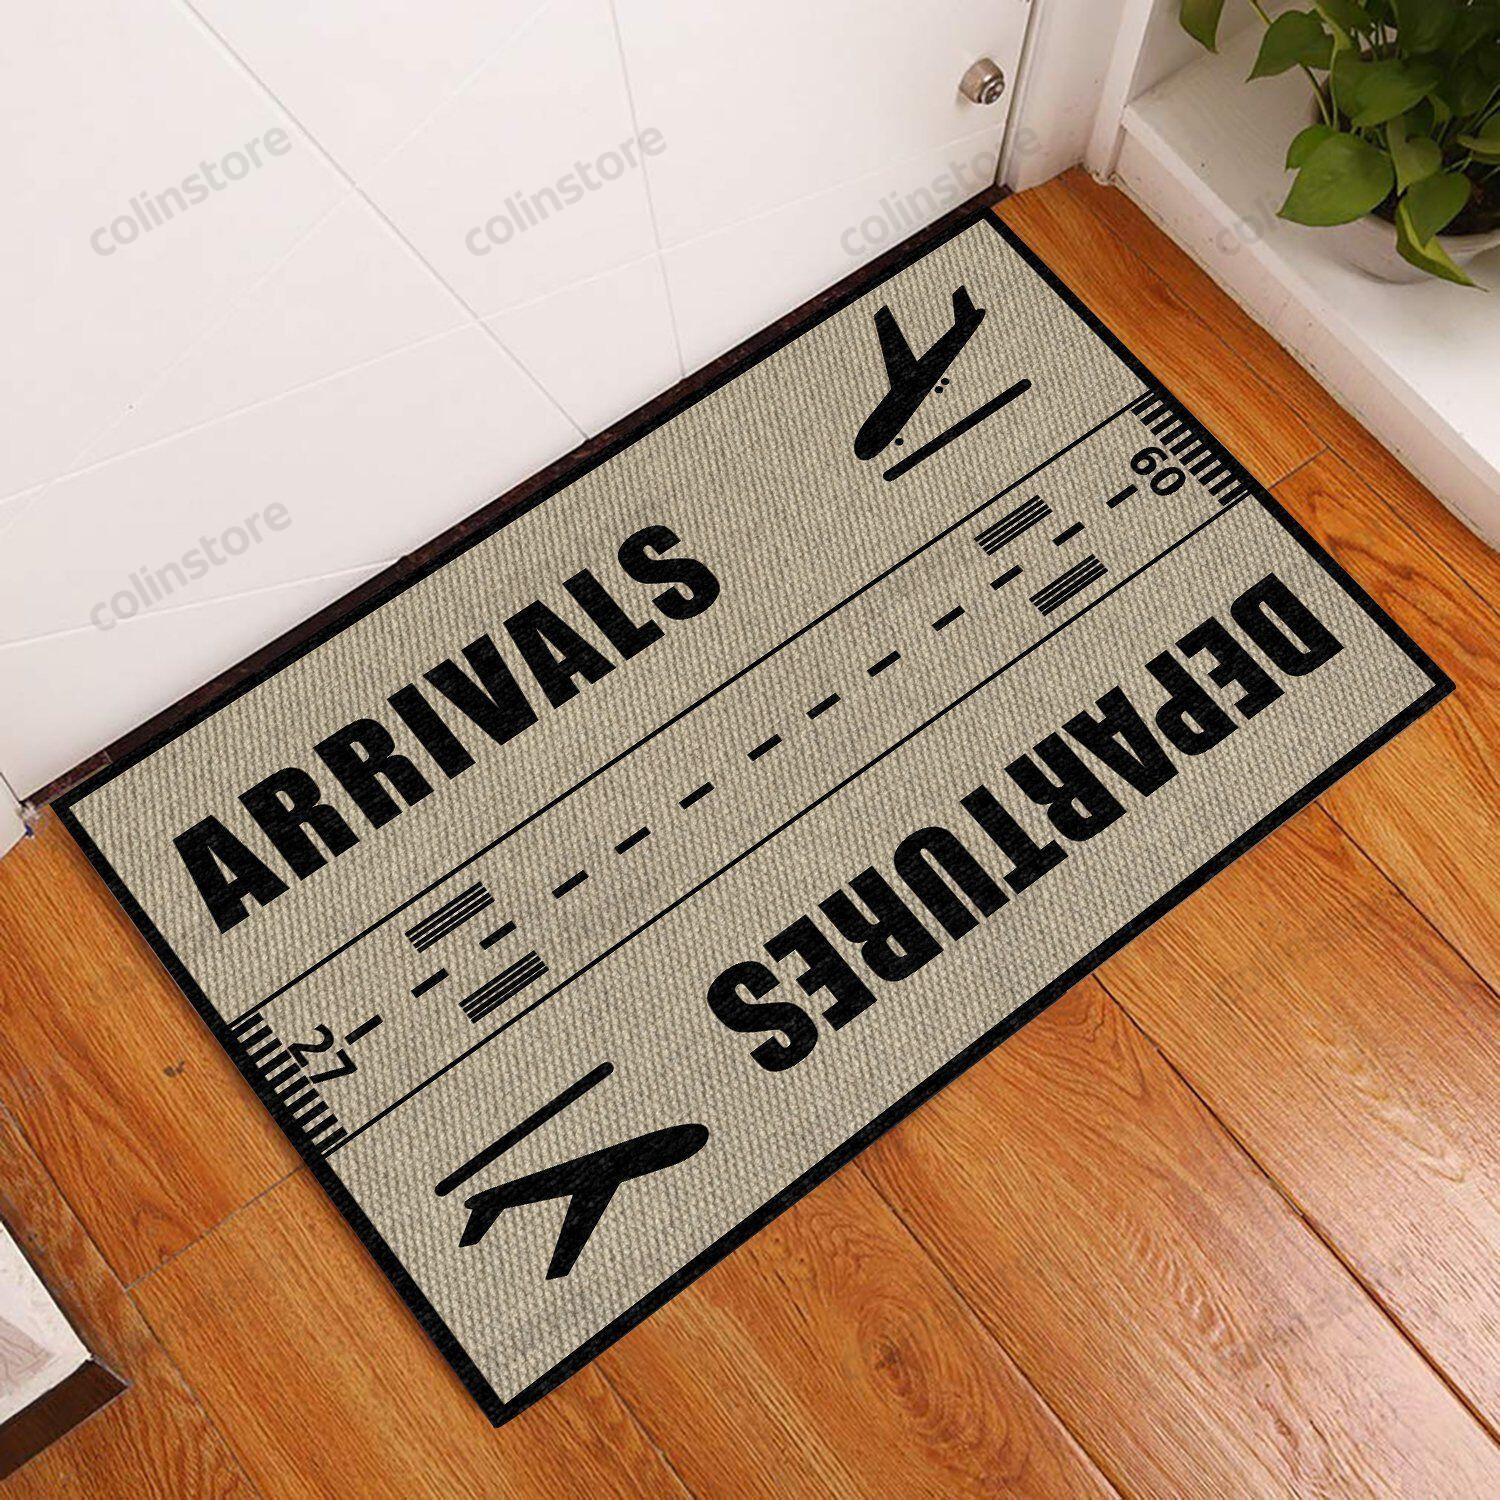 Arrivals And Departures Pilot Doormat Welcome Mat